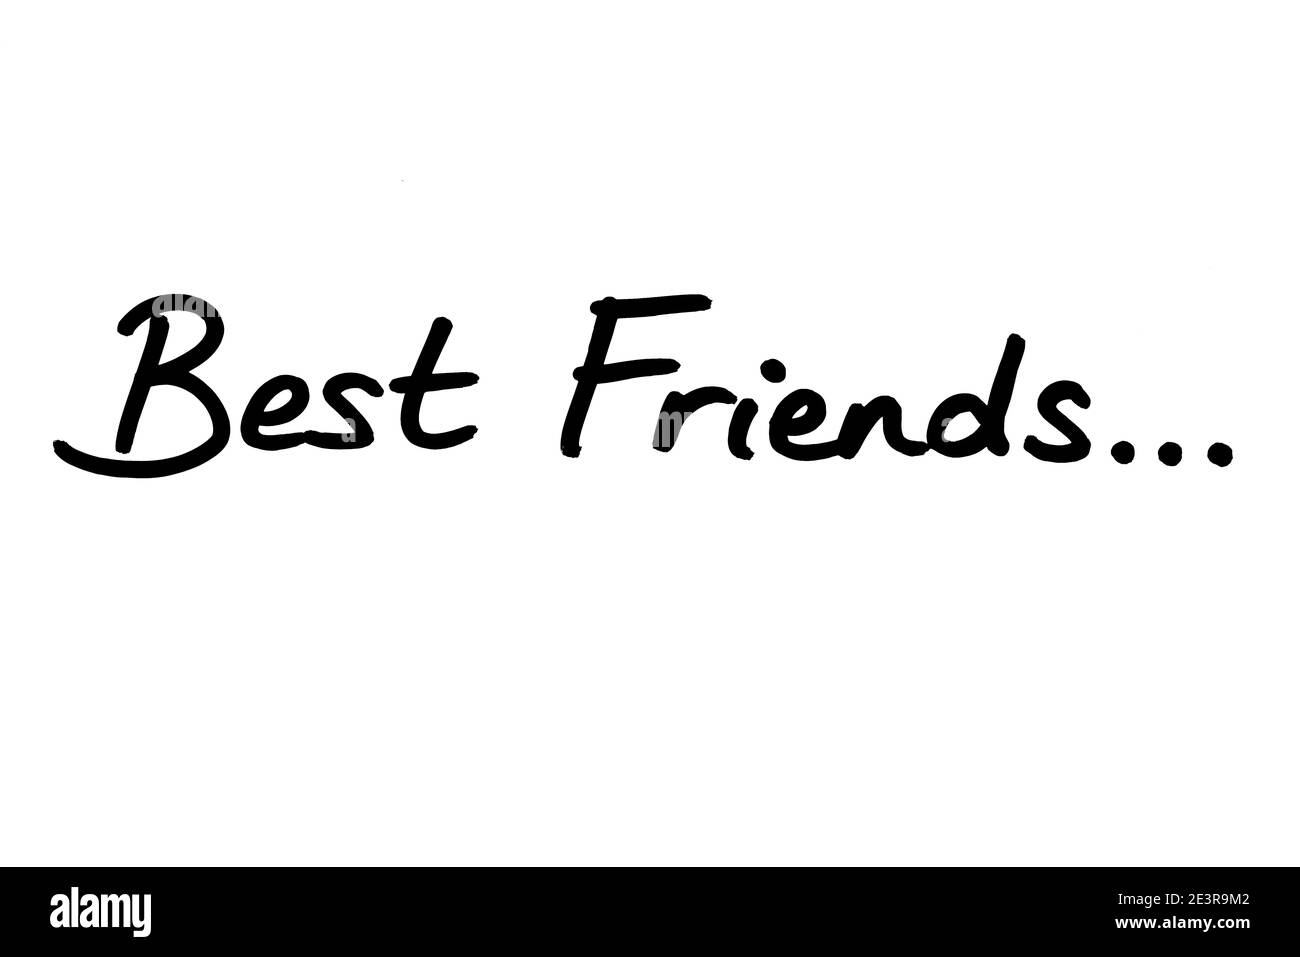 Best Friends… handwritten on a white background. Stock Photo